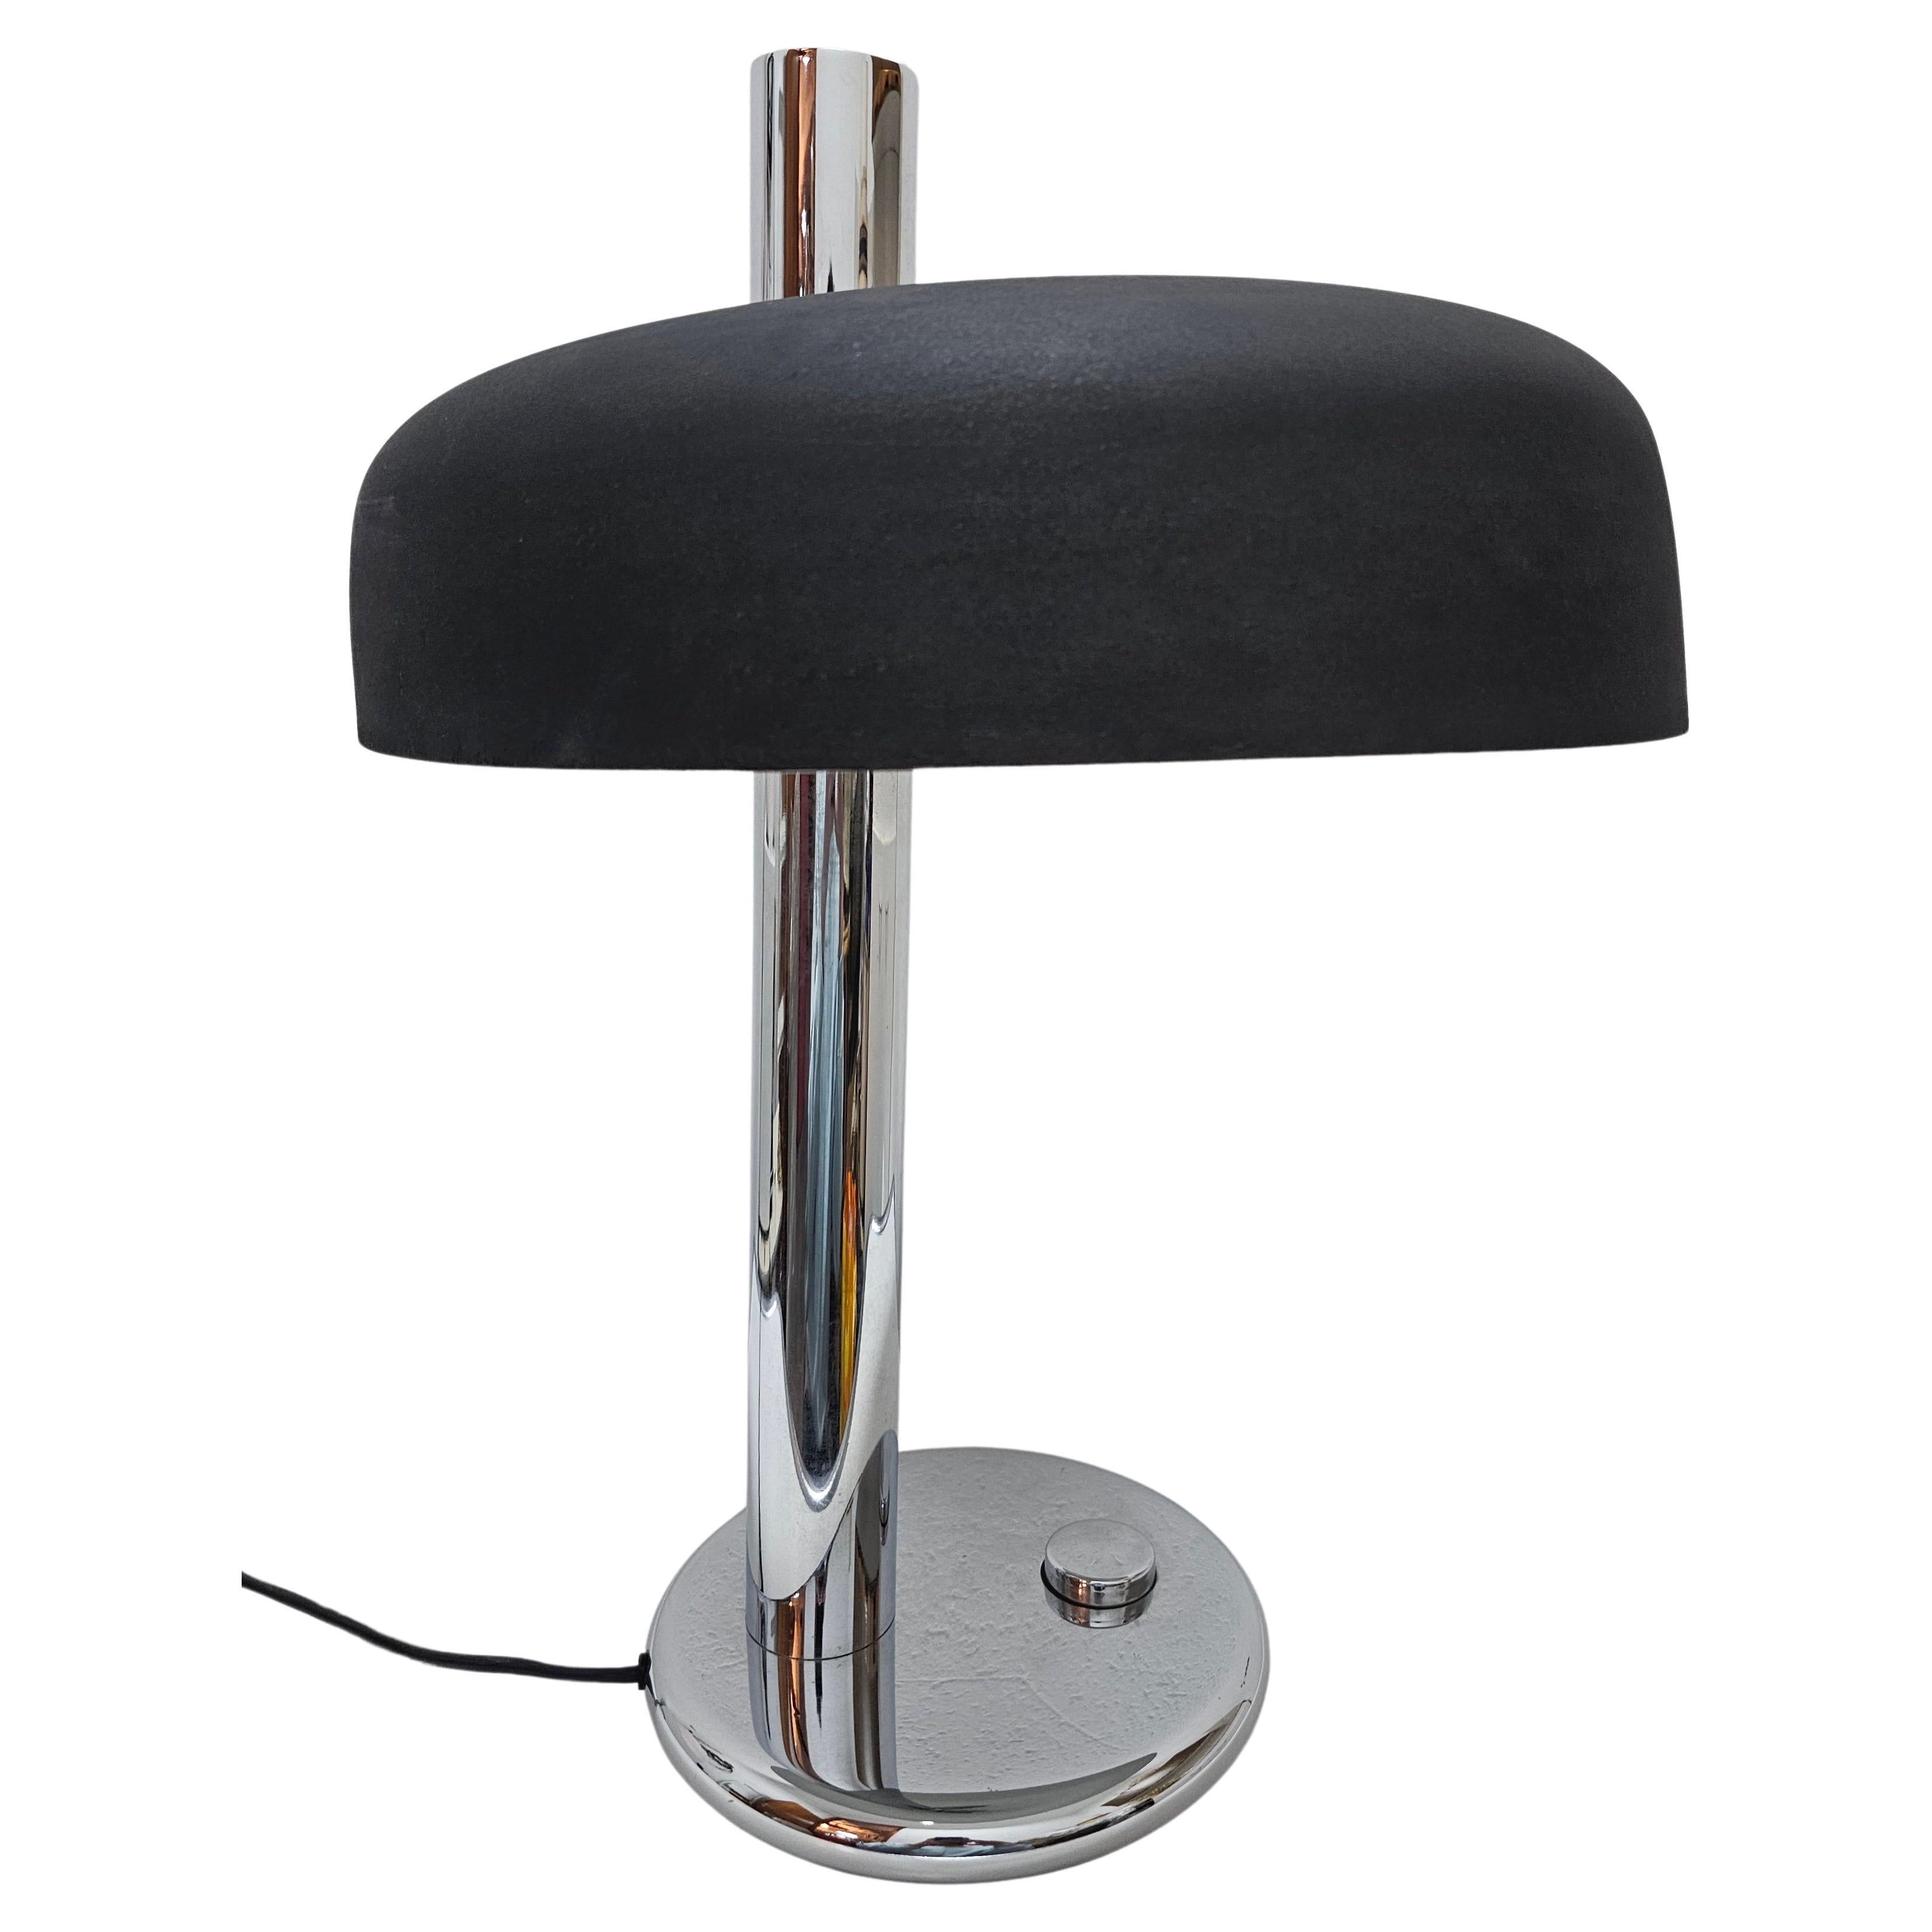 Lampe de table de style Bauhaus modèle 7603 conçue par Heinz Pfaender pour Hillebrand 